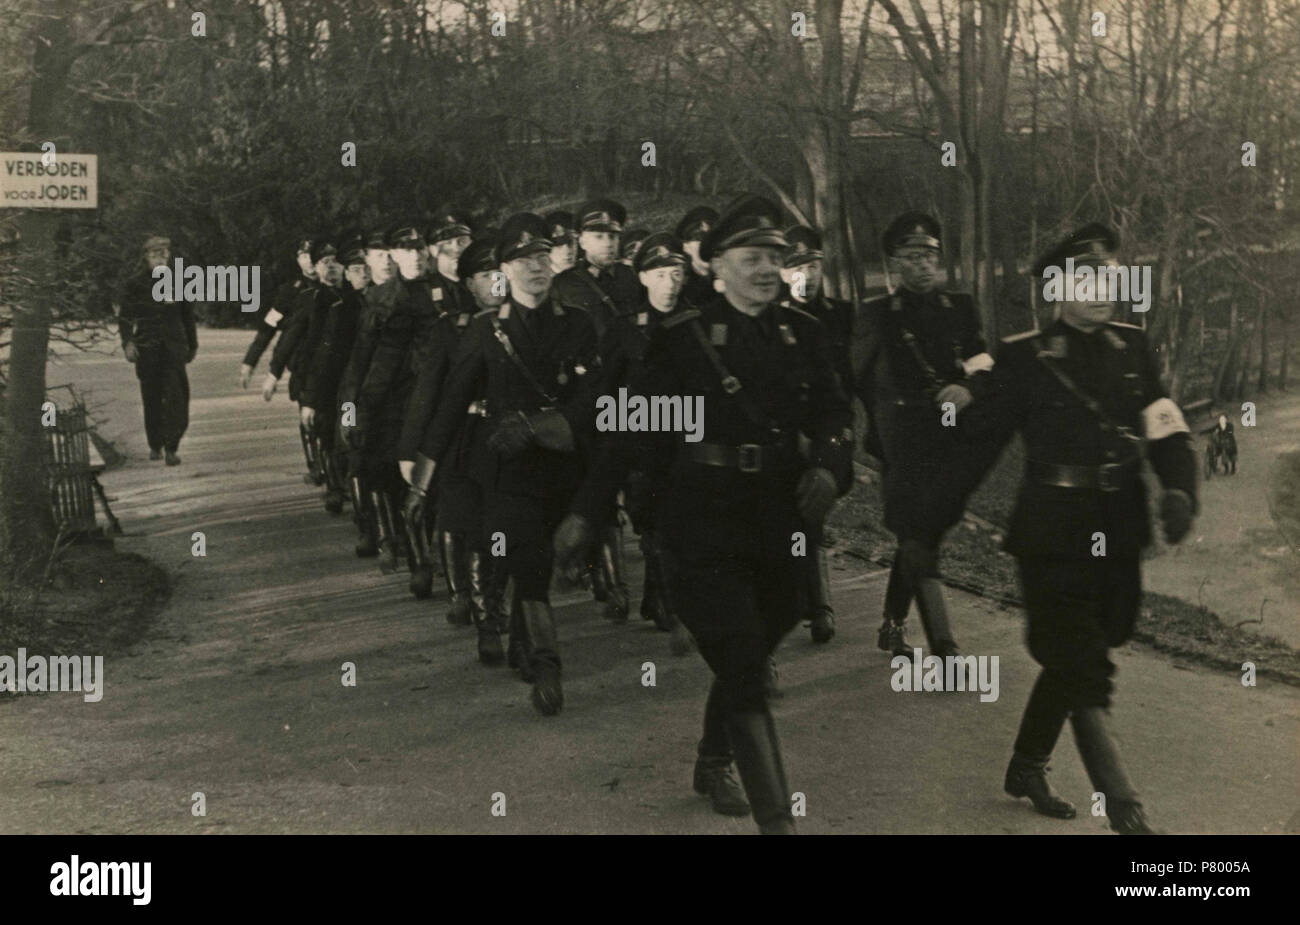 . Mars WA. Nederlands: De WA marcheert langs een bord 'Verboden voor joden'. Deze foto is afkomstig uit het archief van de Fotodienst der NSB. Unknown date 261 Mars WA - Fotodienst der NSB - NIOD - 210669 Stock Photo